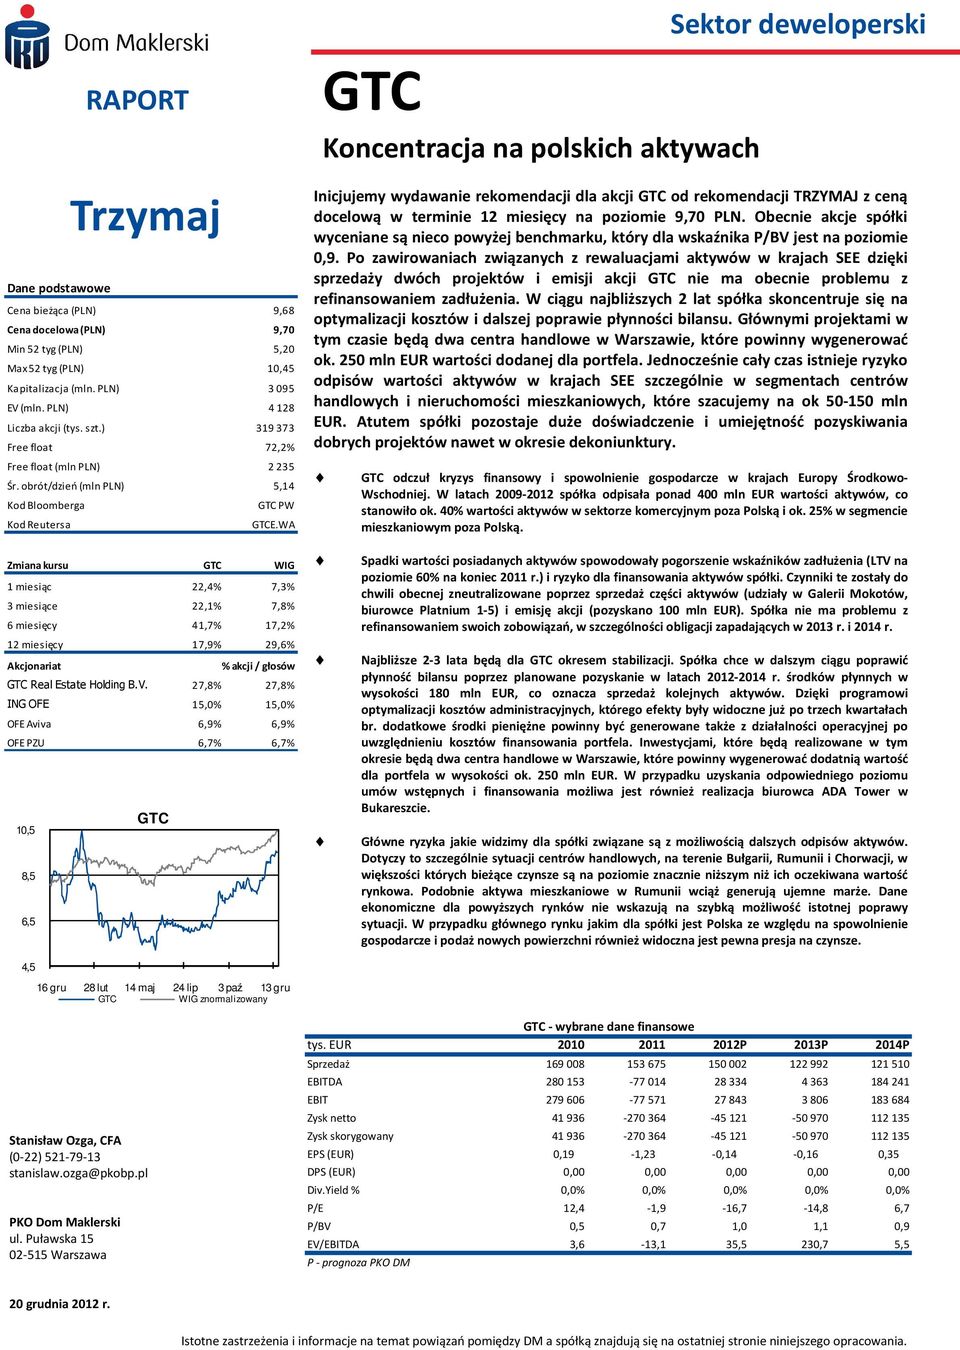 WA Inicjujemy wydawanie rekomendacji dla akcji GTC od rekomendacji TRZYMAJ z ceną docelową w terminie 12 miesięcy na poziomie 9,70 PLN.